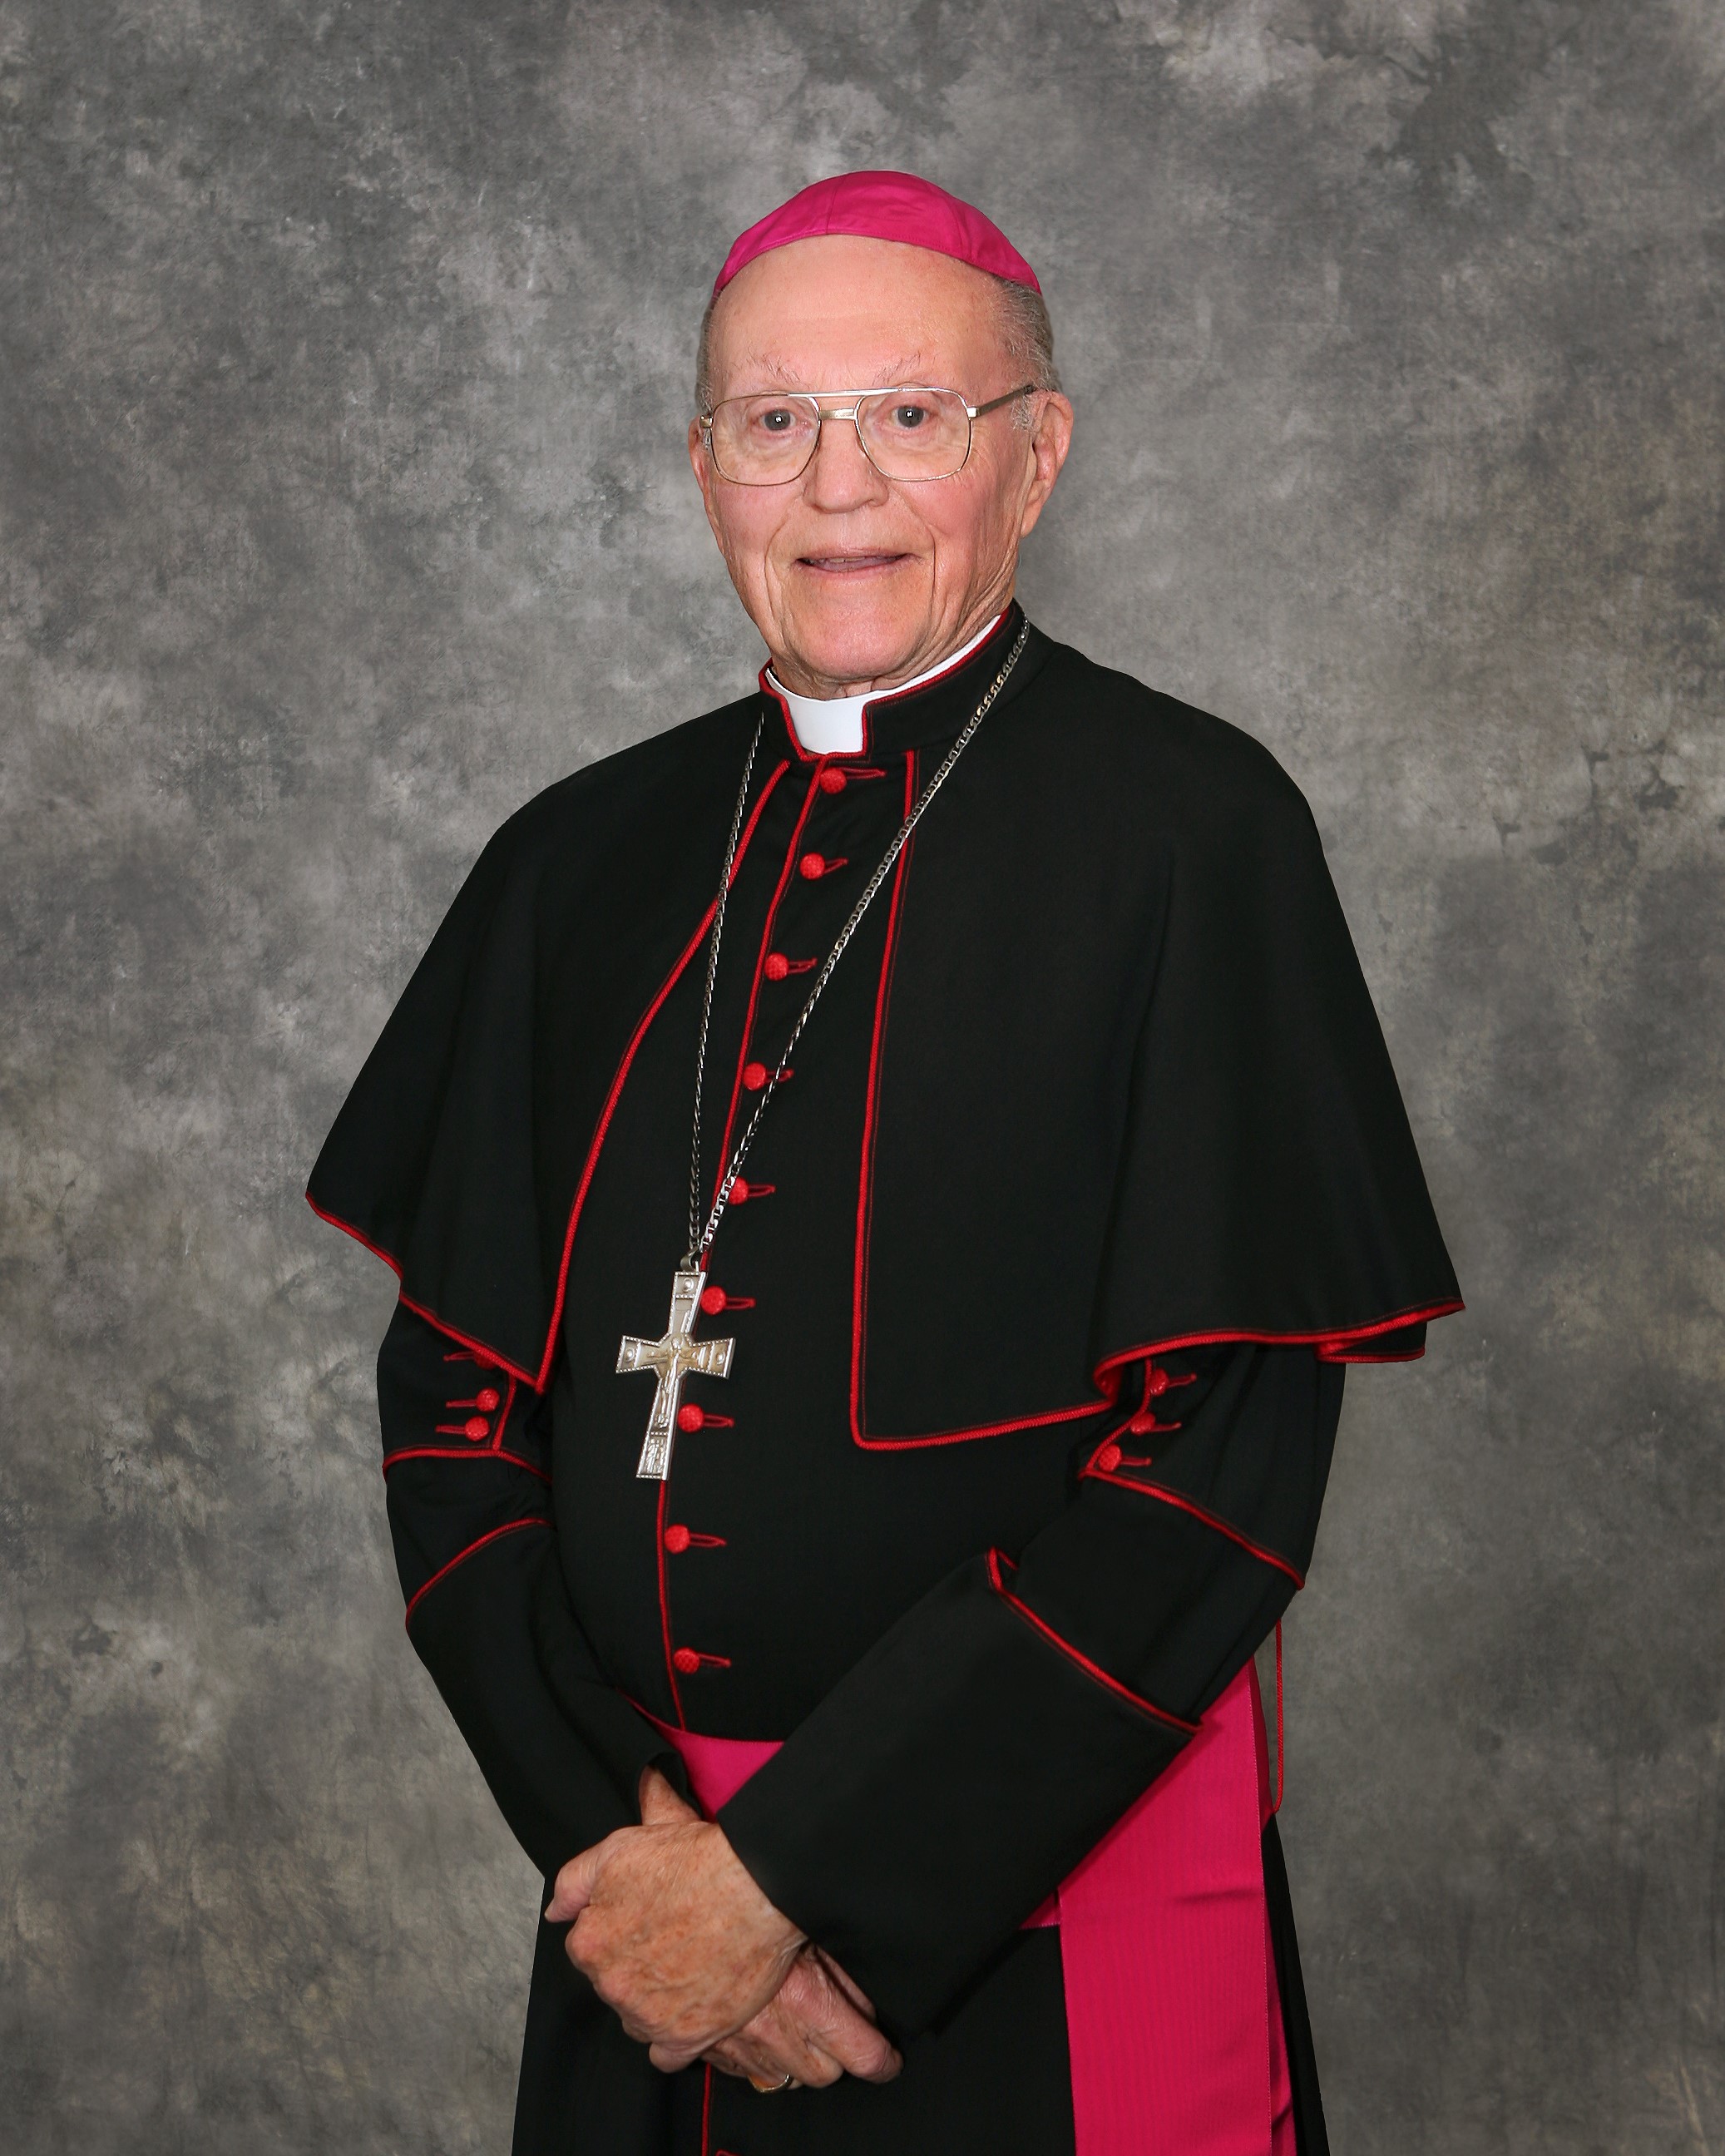 Bishop Hanifen